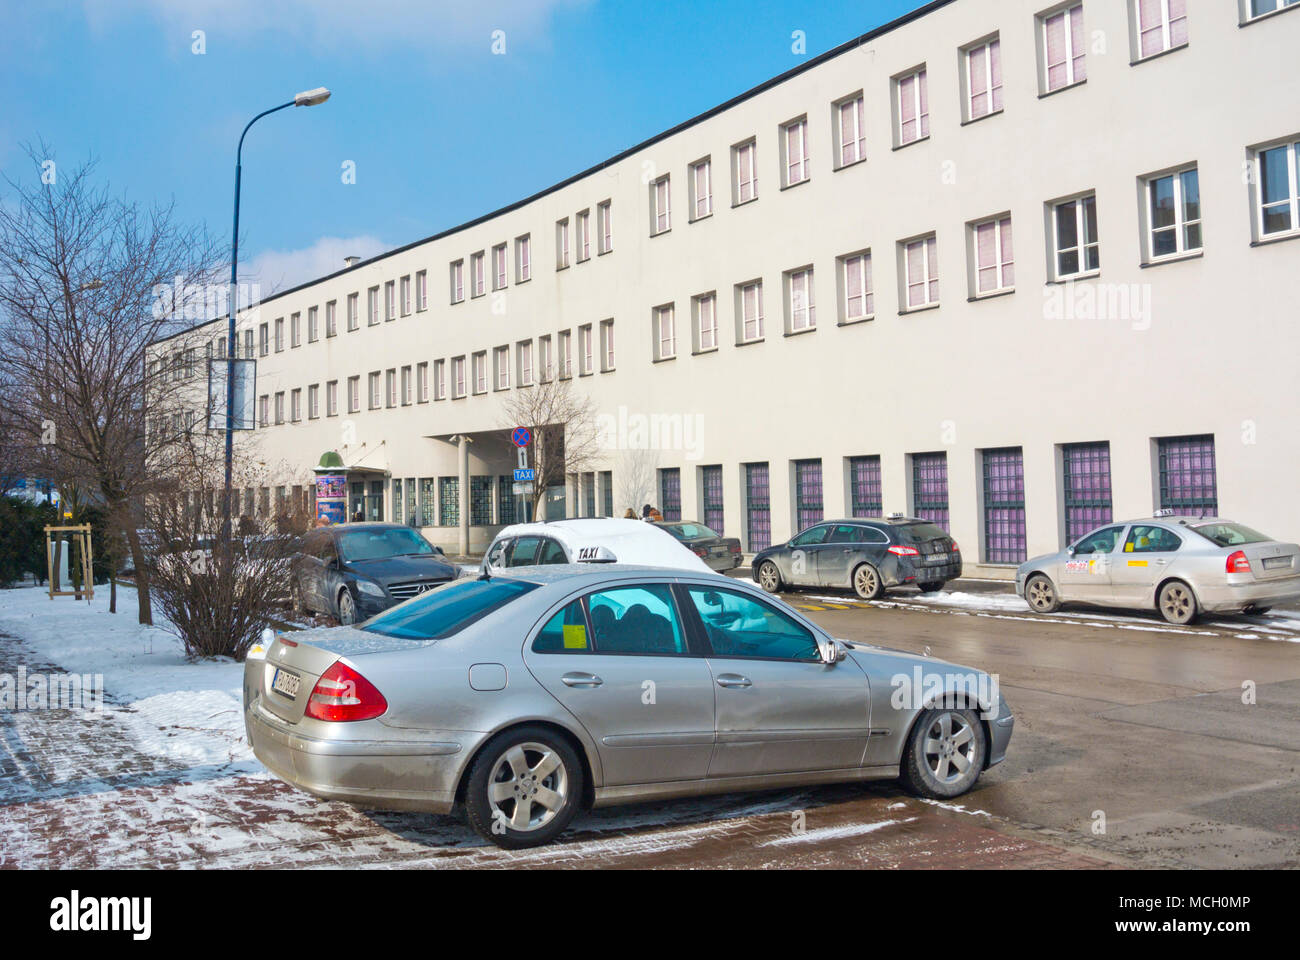 Taxi, en face de l'usine Schindler émail, Podgorze, Zablocie, Cracovie, Pologne, Malopolska Banque D'Images